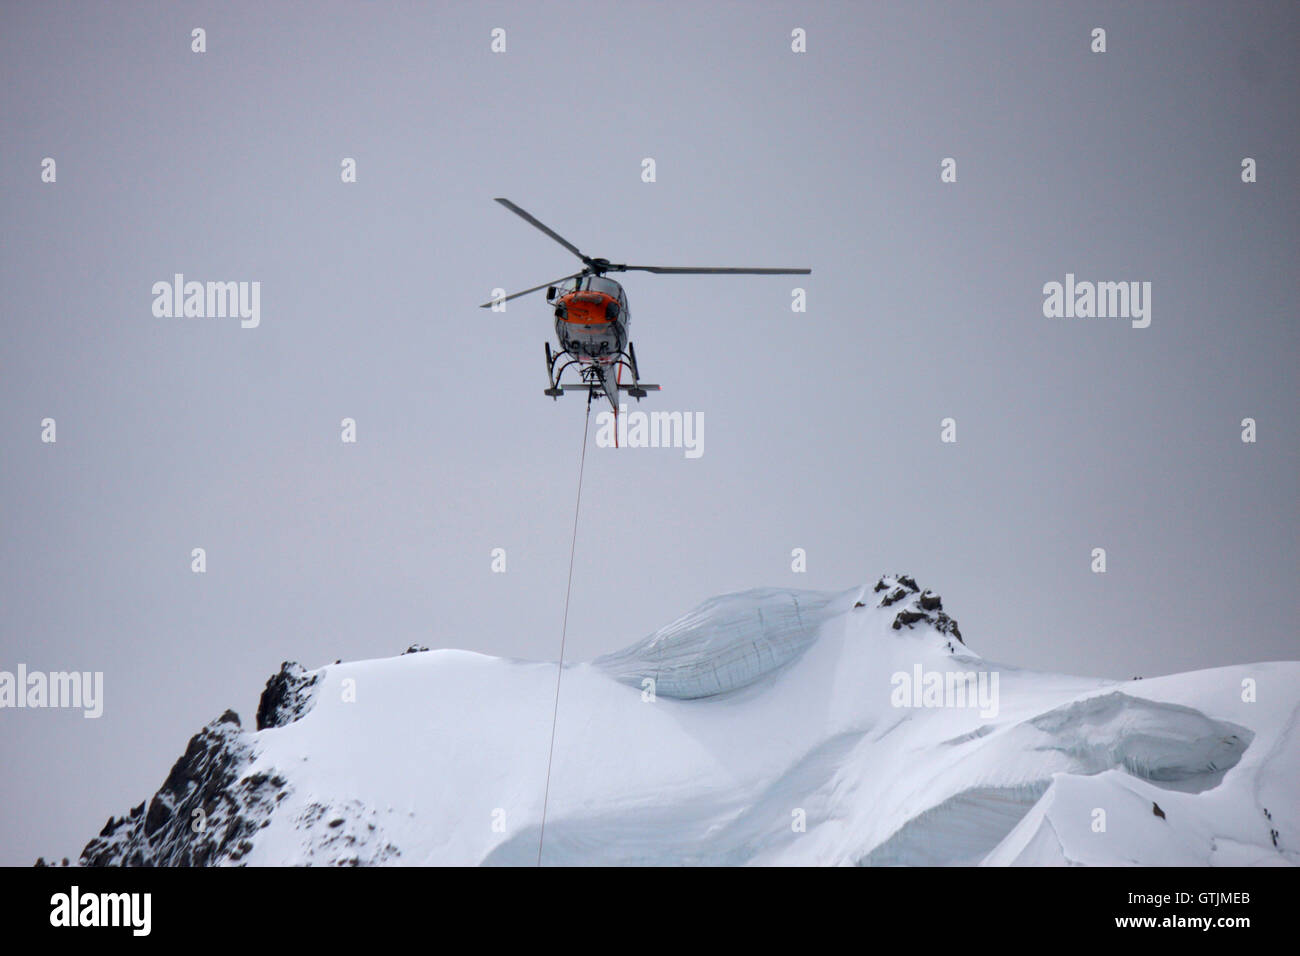 Hubschrauber, Mont Blanc-Massiv, Chamonix, Frankreich. Stock Photo